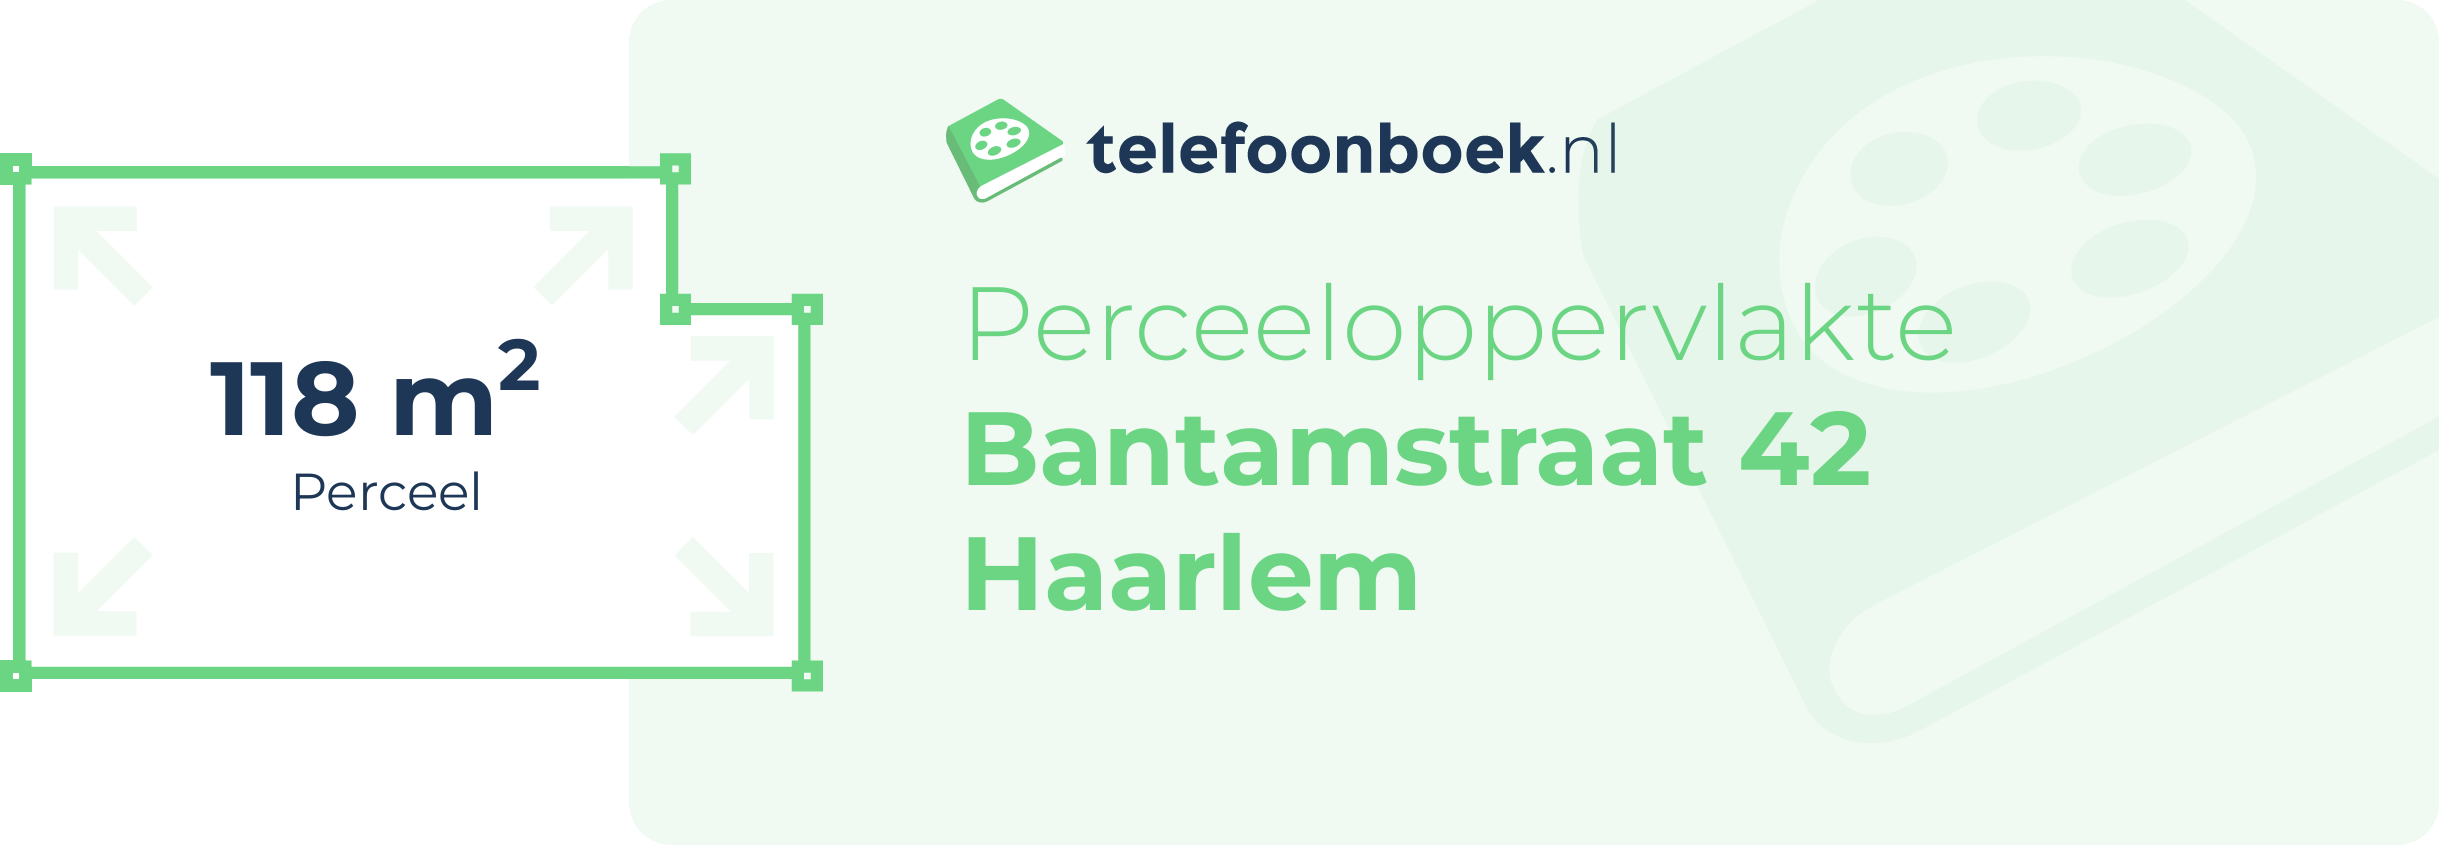 Perceeloppervlakte Bantamstraat 42 Haarlem